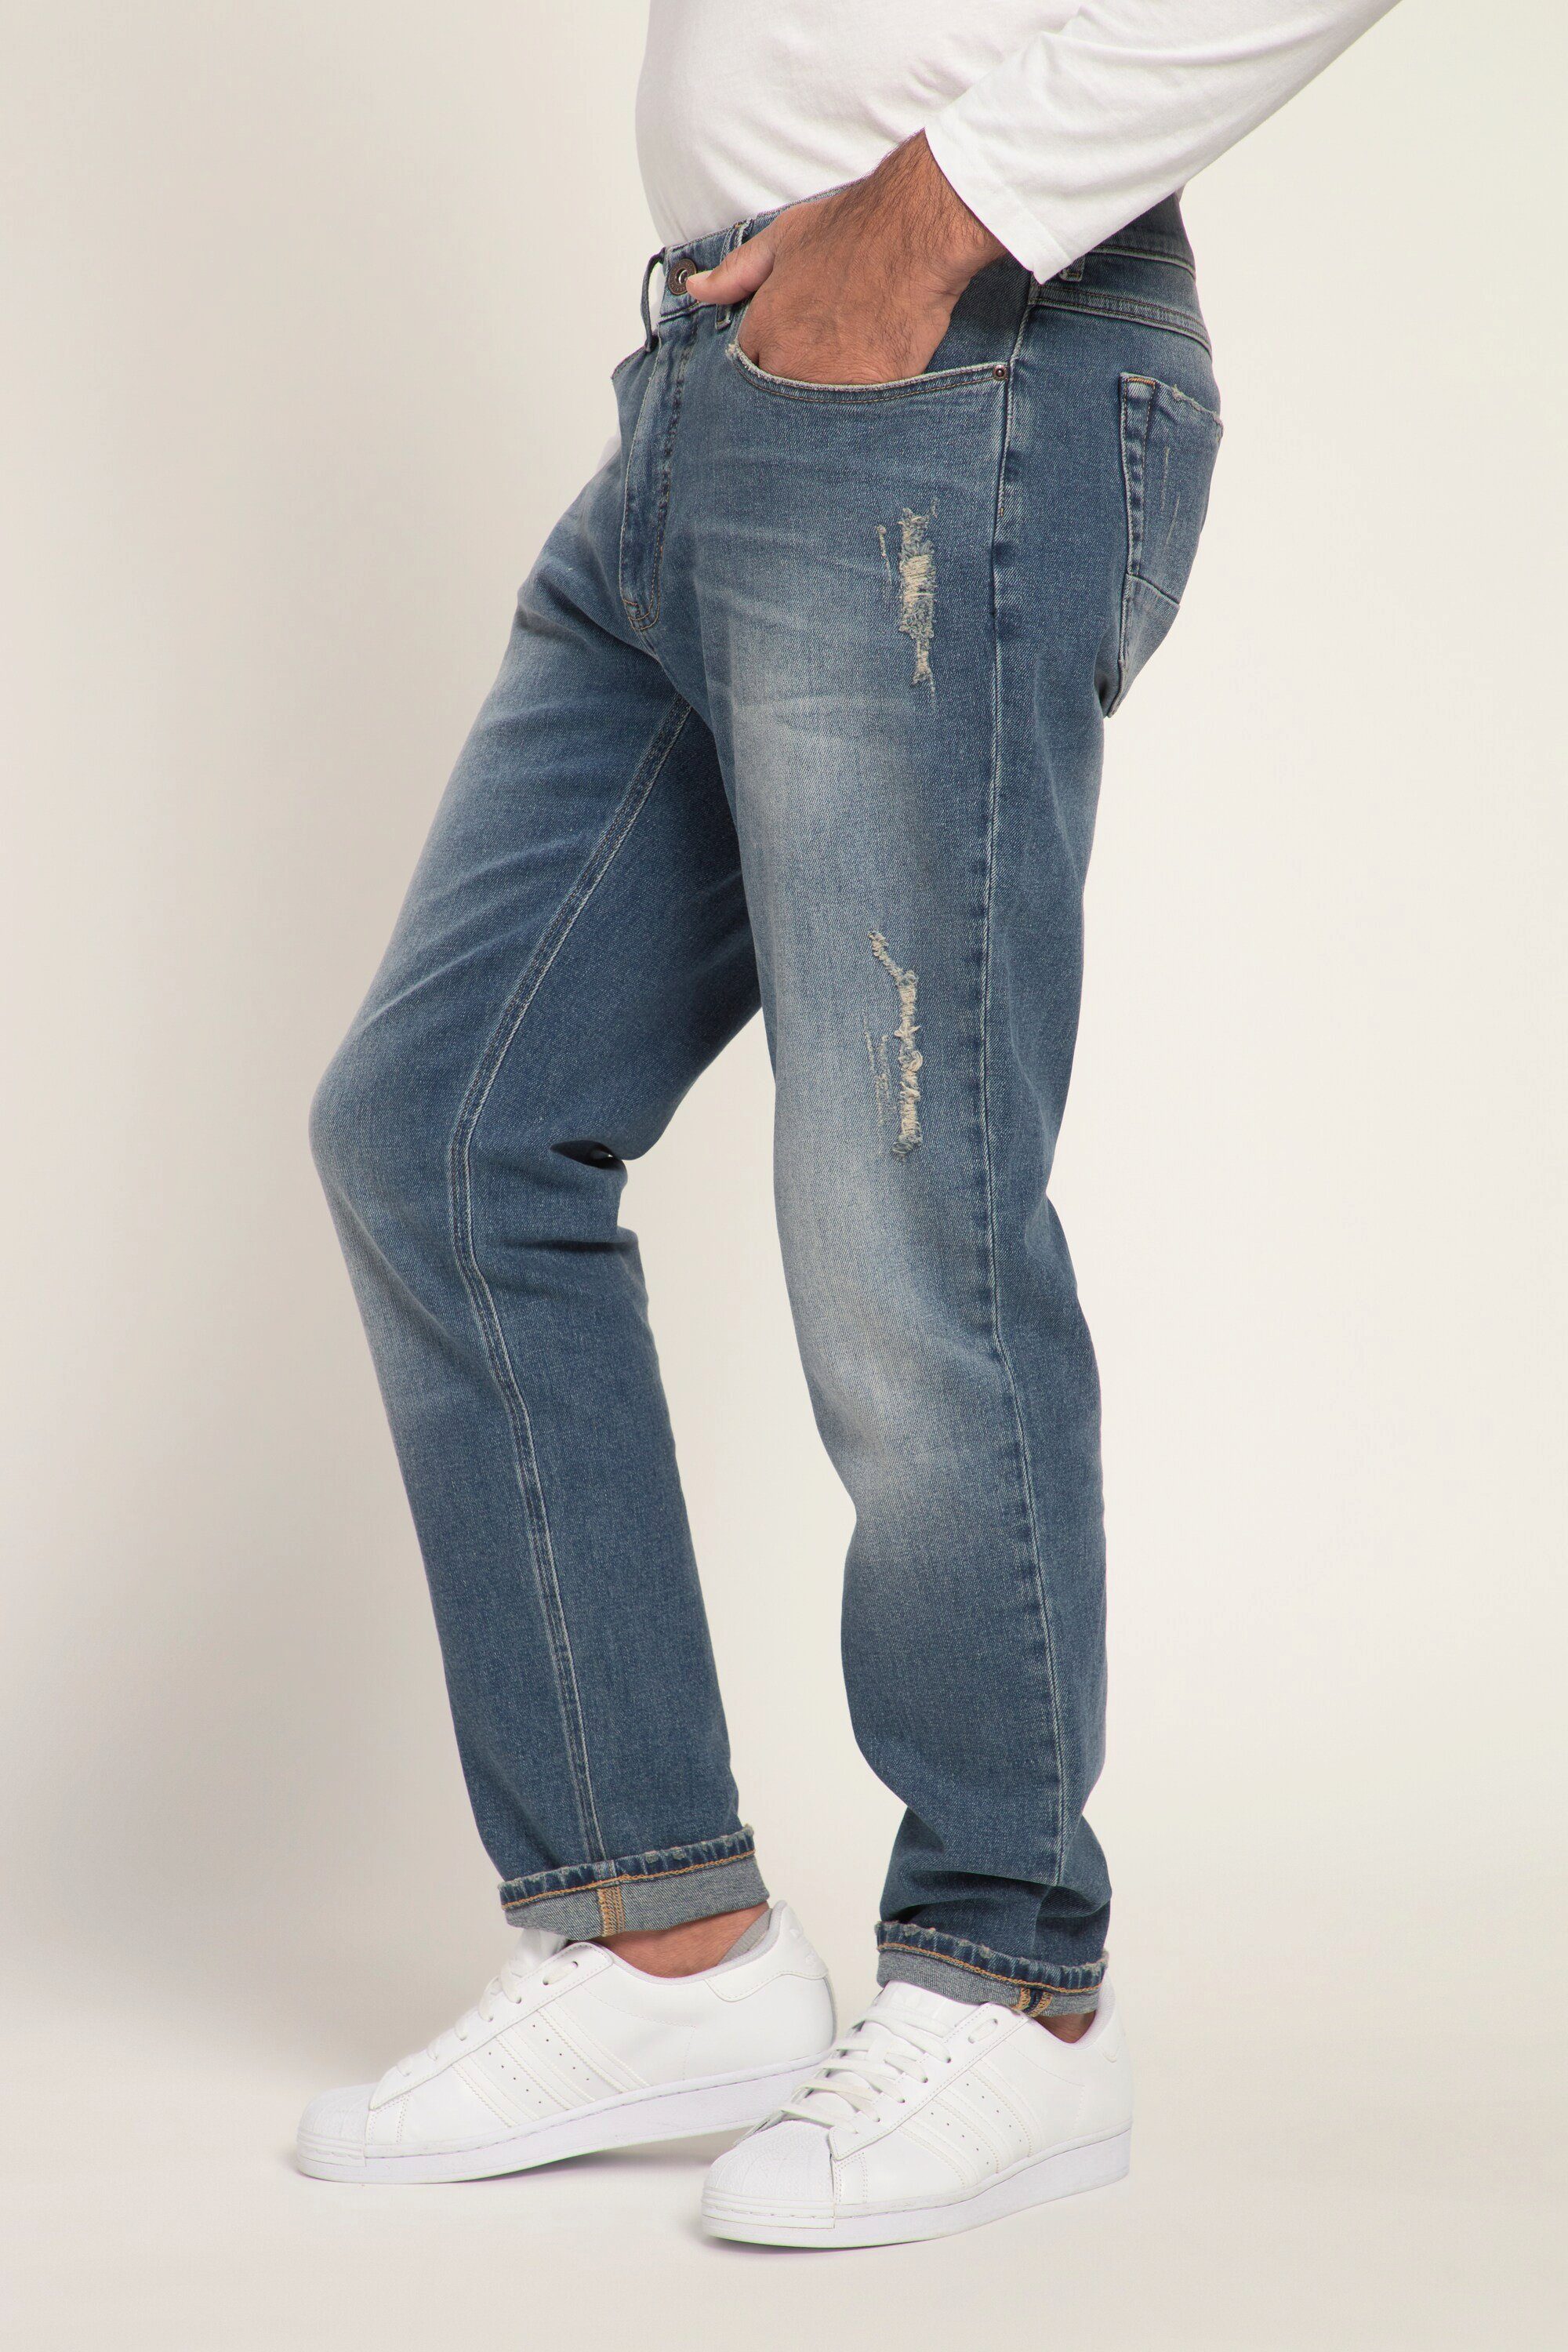 Jeans bleached Destroy-Look 5-Pocket-Jeans Denim JP1880 FLEXNAMIC®